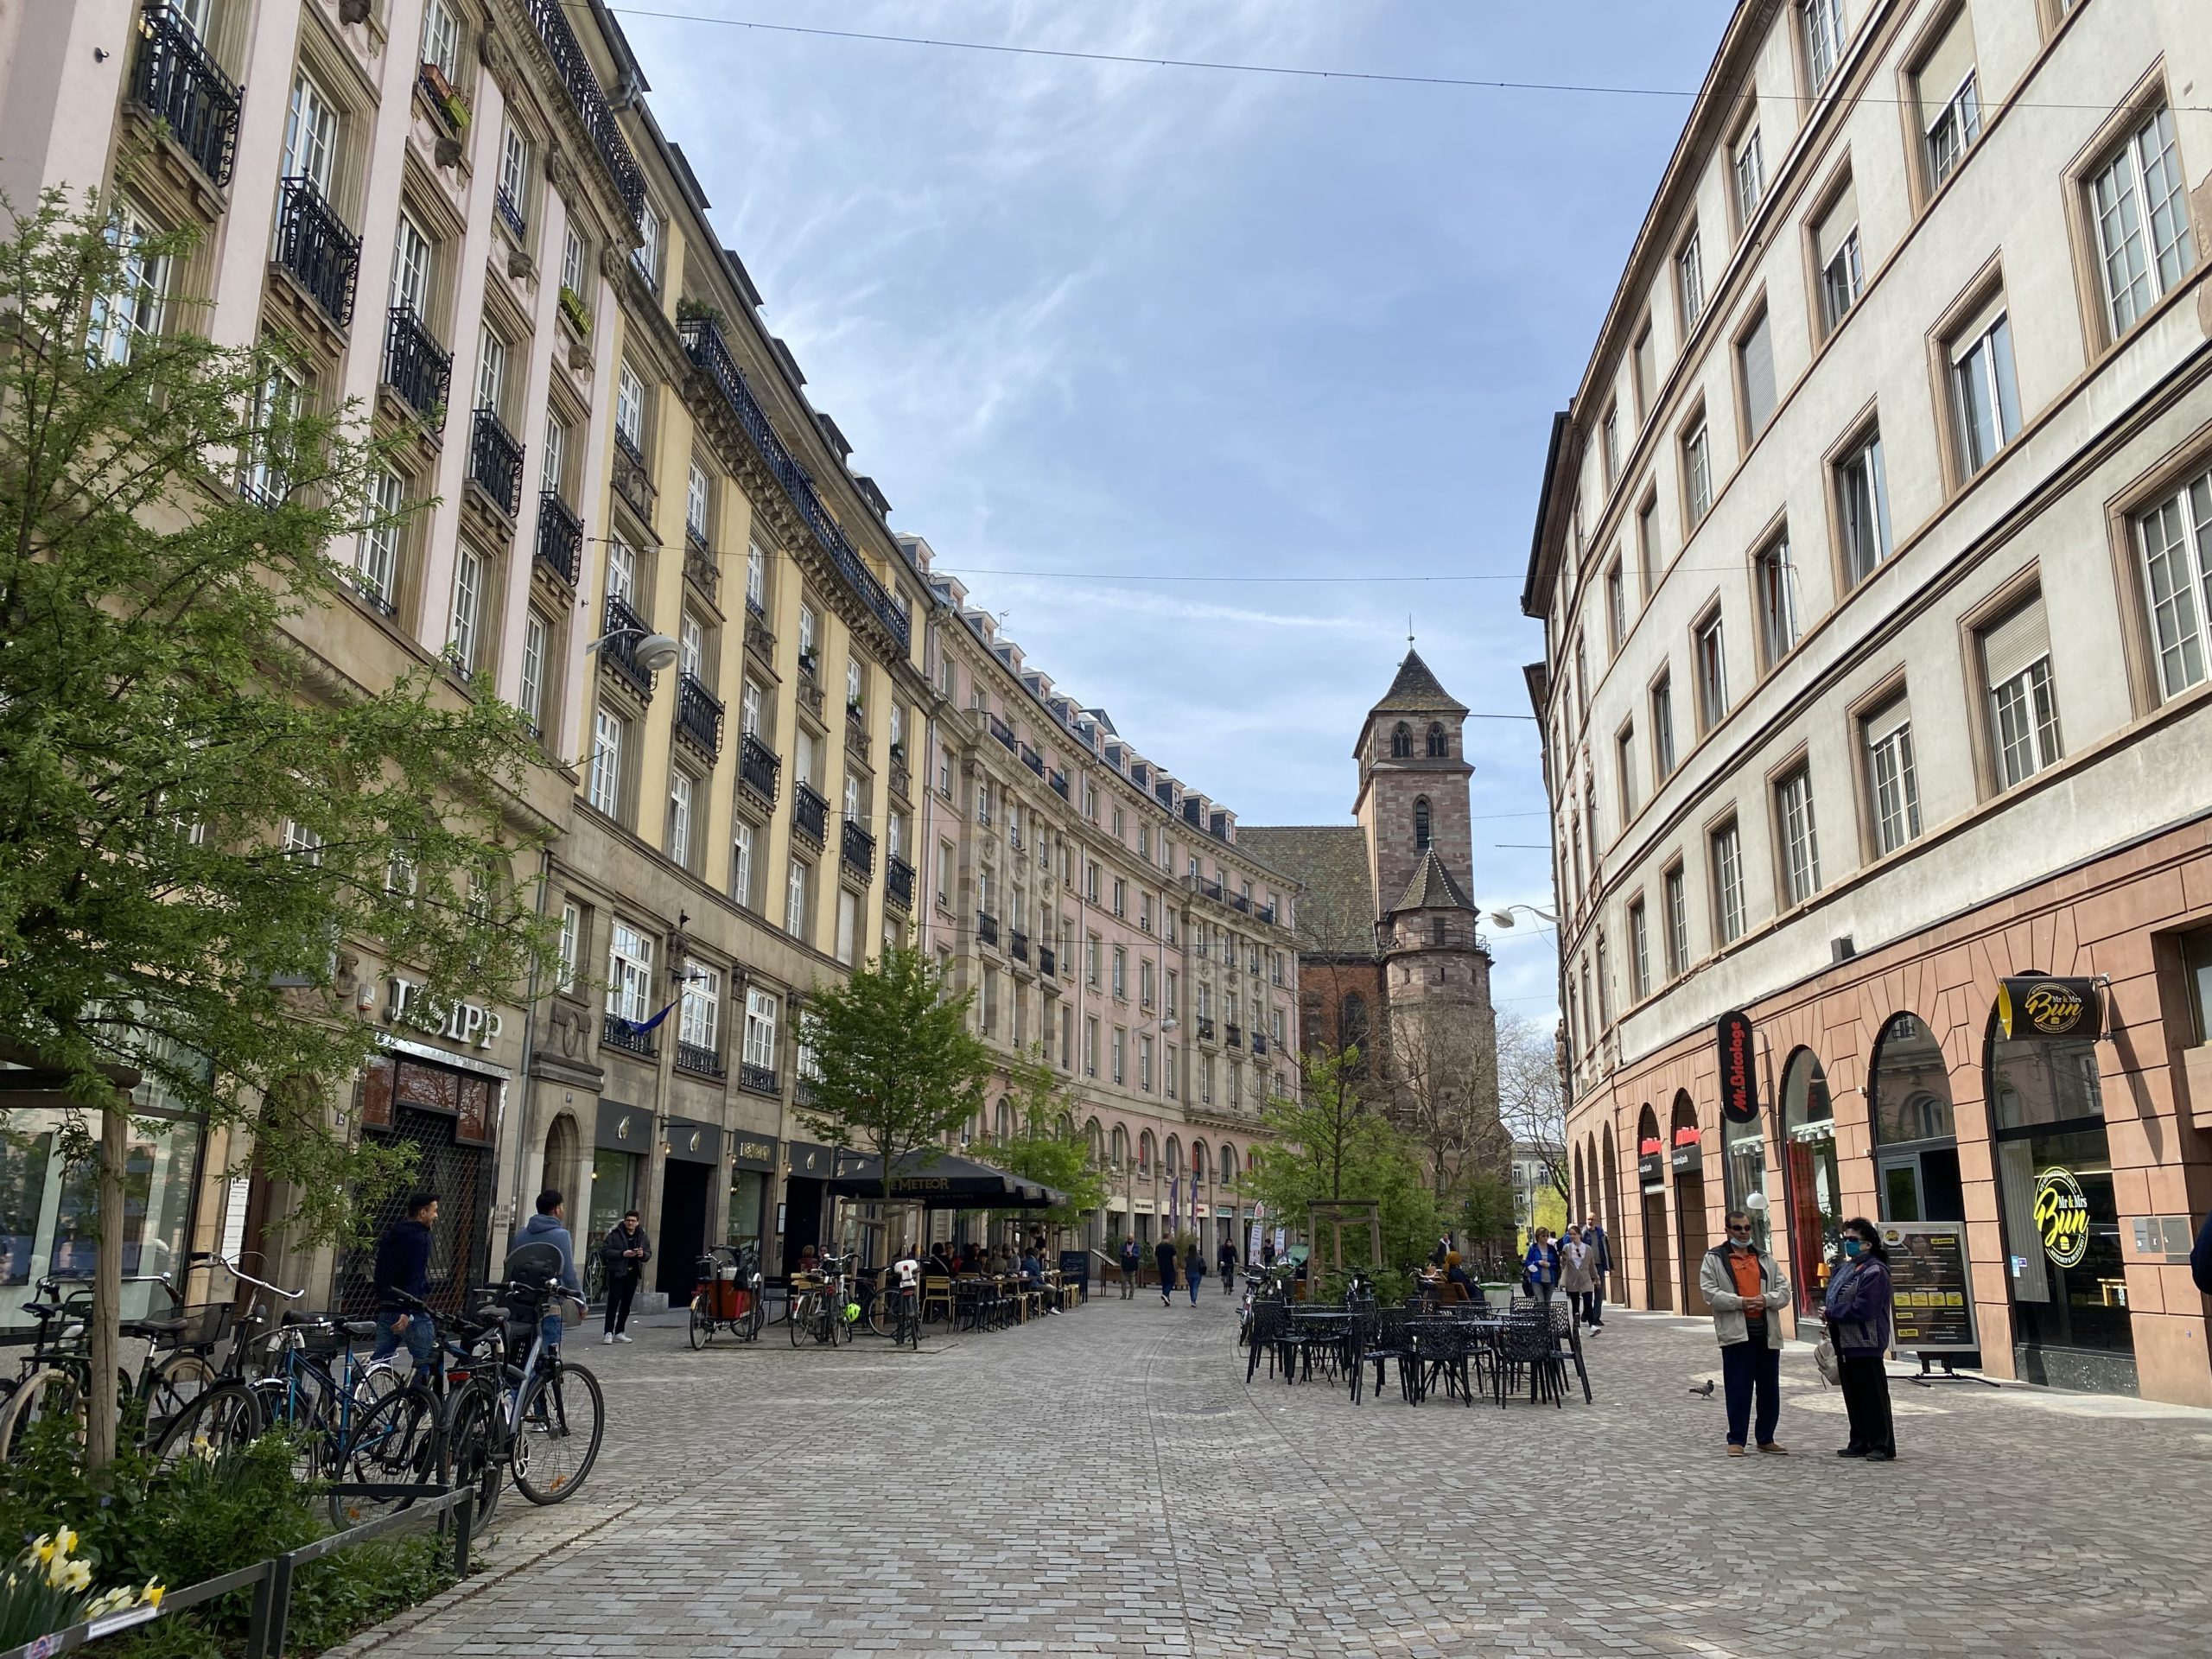 Centre-ville de Strasbourg comprenant une rue piétonne pavée, végétalisée et animée. Des personnes discutent. L'église est visible en arrière-plan